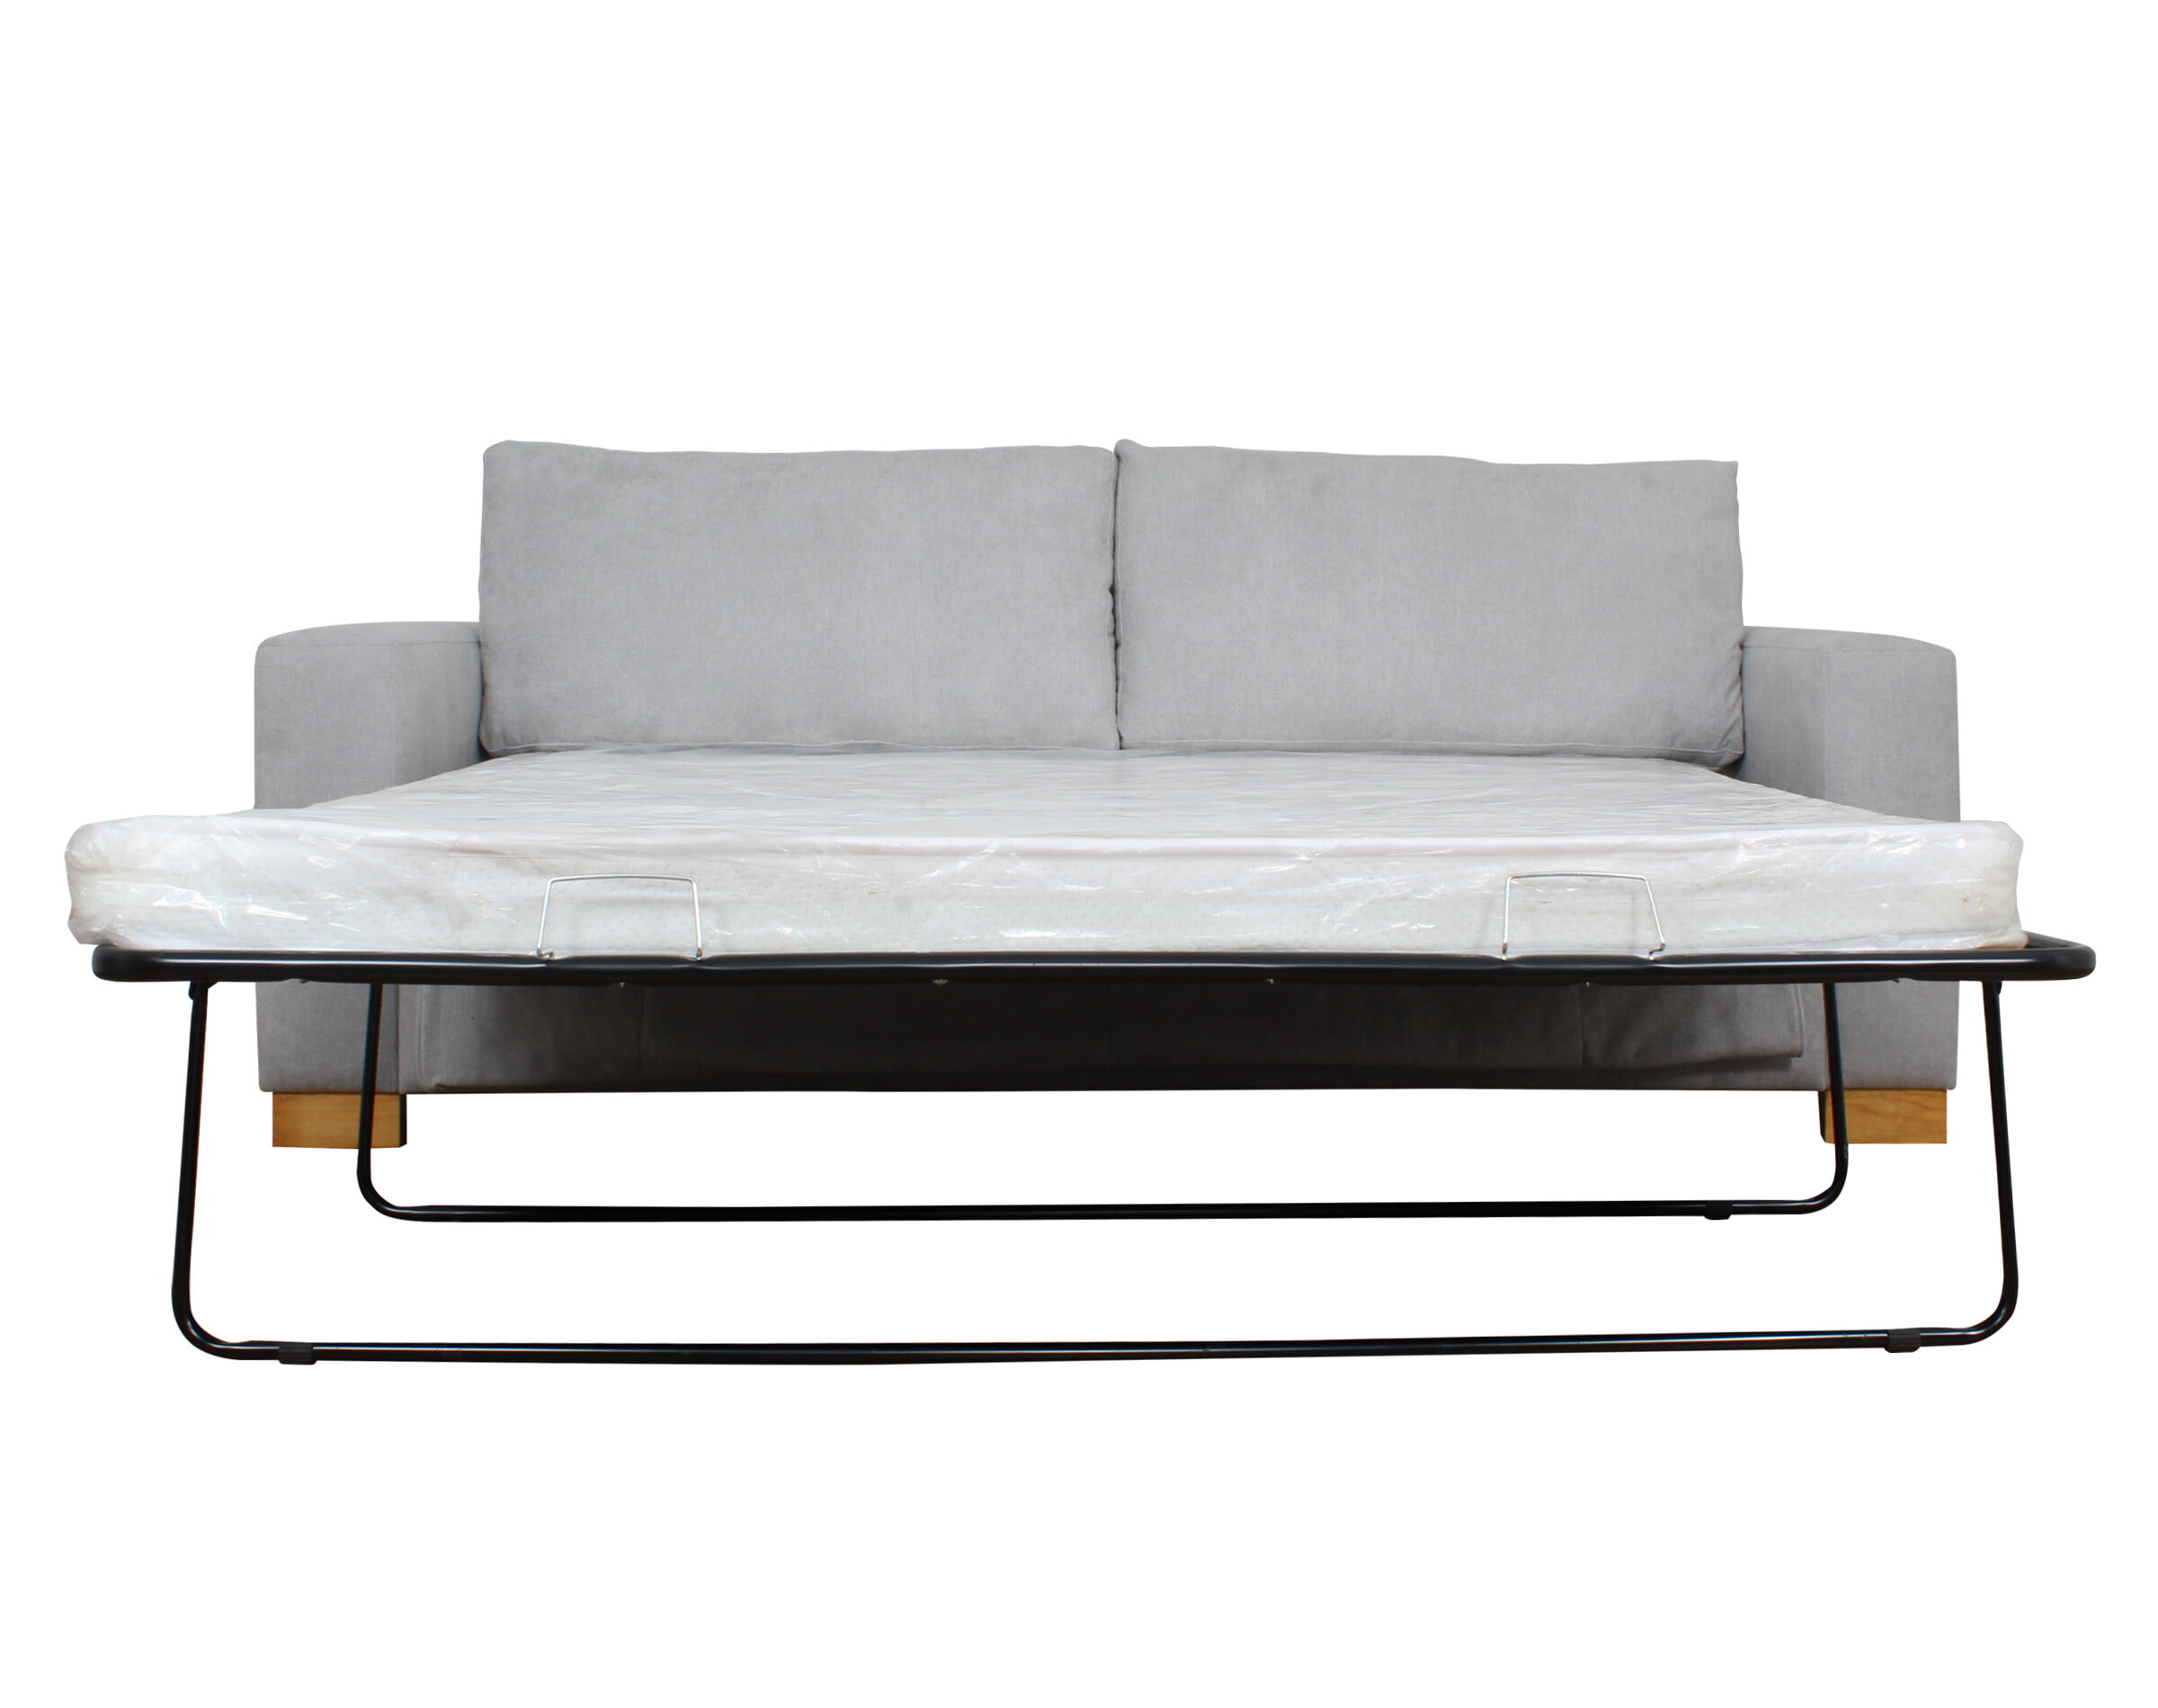 Cuánto pesa un sofá cama de dos plazas?